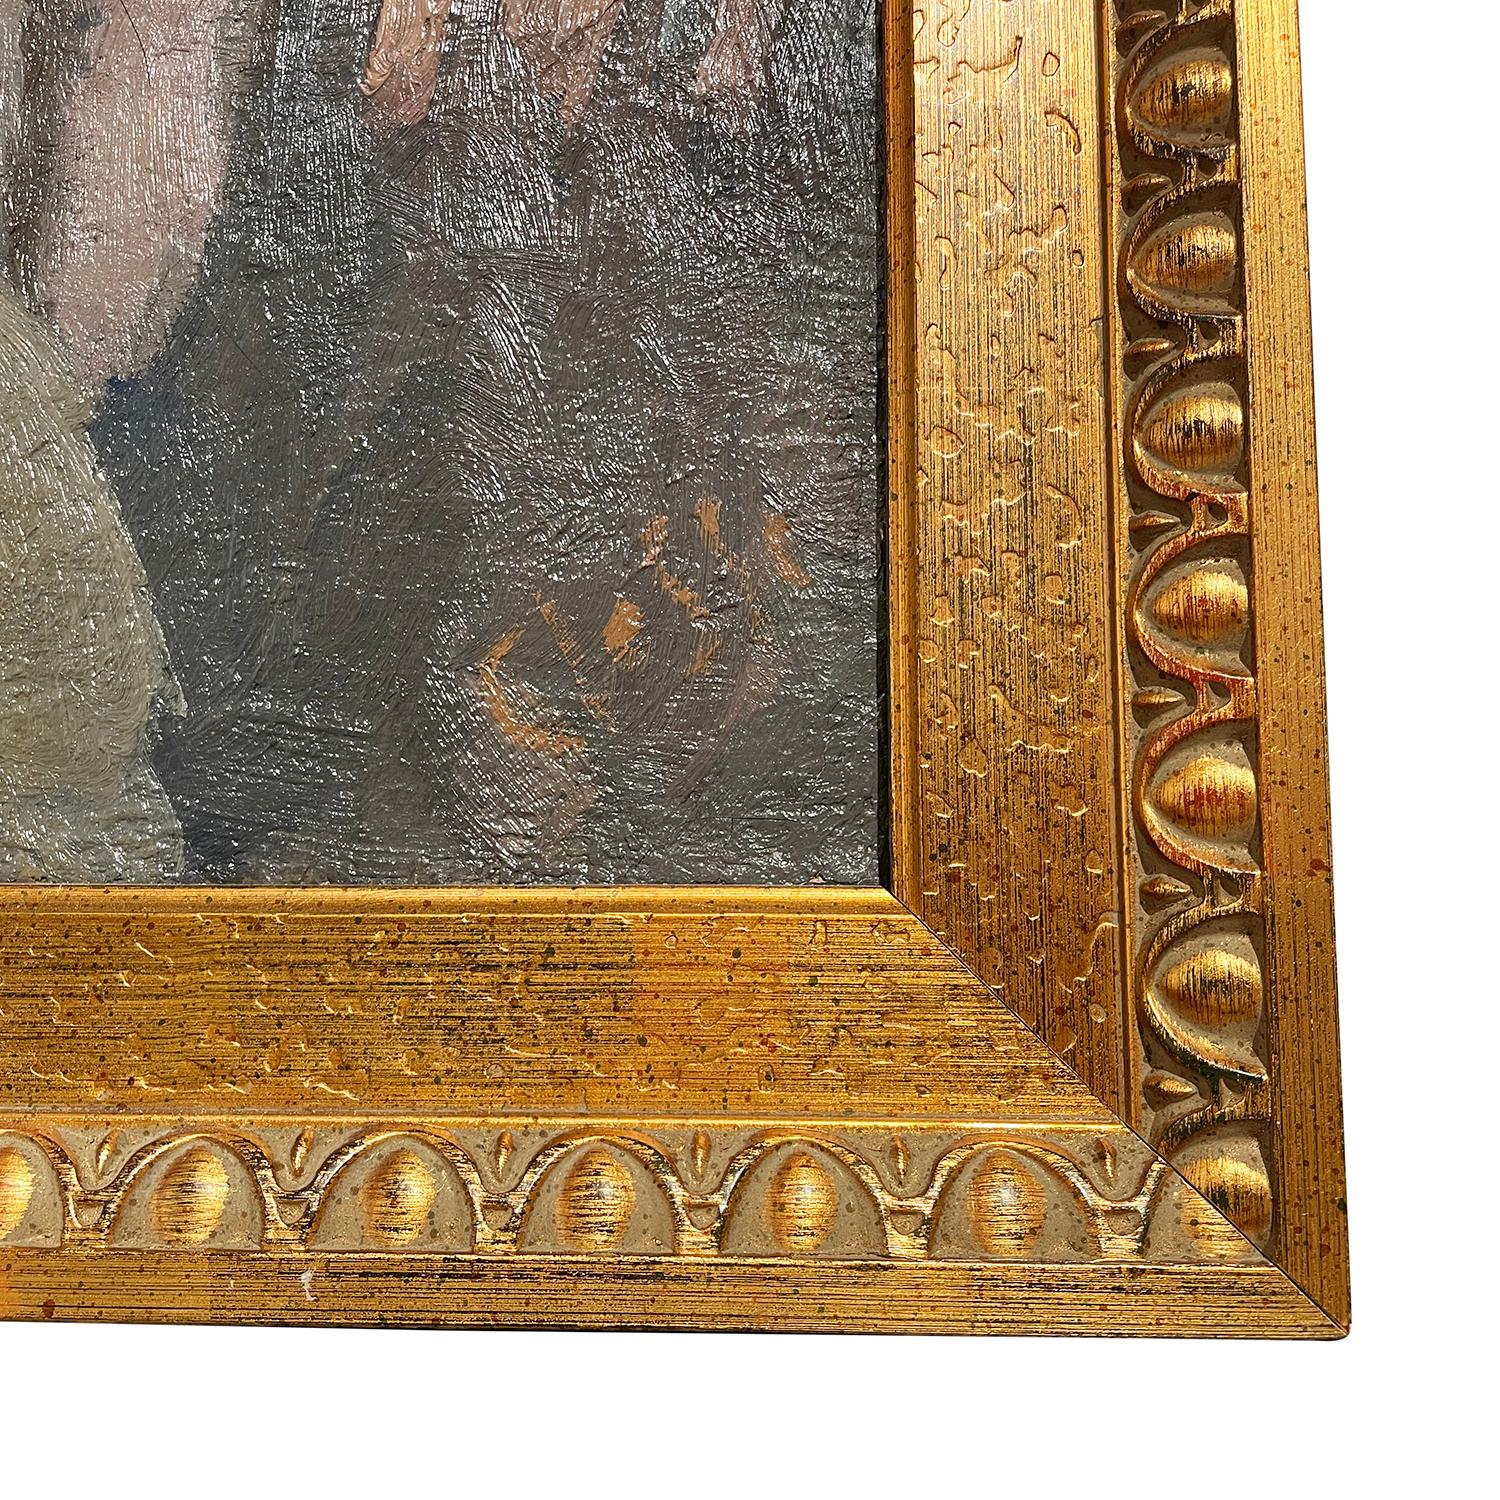 Une huile sur toile de Daniel Clesse et probablement de sa femme Christiane Clesse et d'amis, en bon état, en forme d'autoportrait. Signé en bas à droite. Usure conforme à l'âge et à l'utilisation. Circa 1960 - 1970, Paris, France.

Sans le cadre :